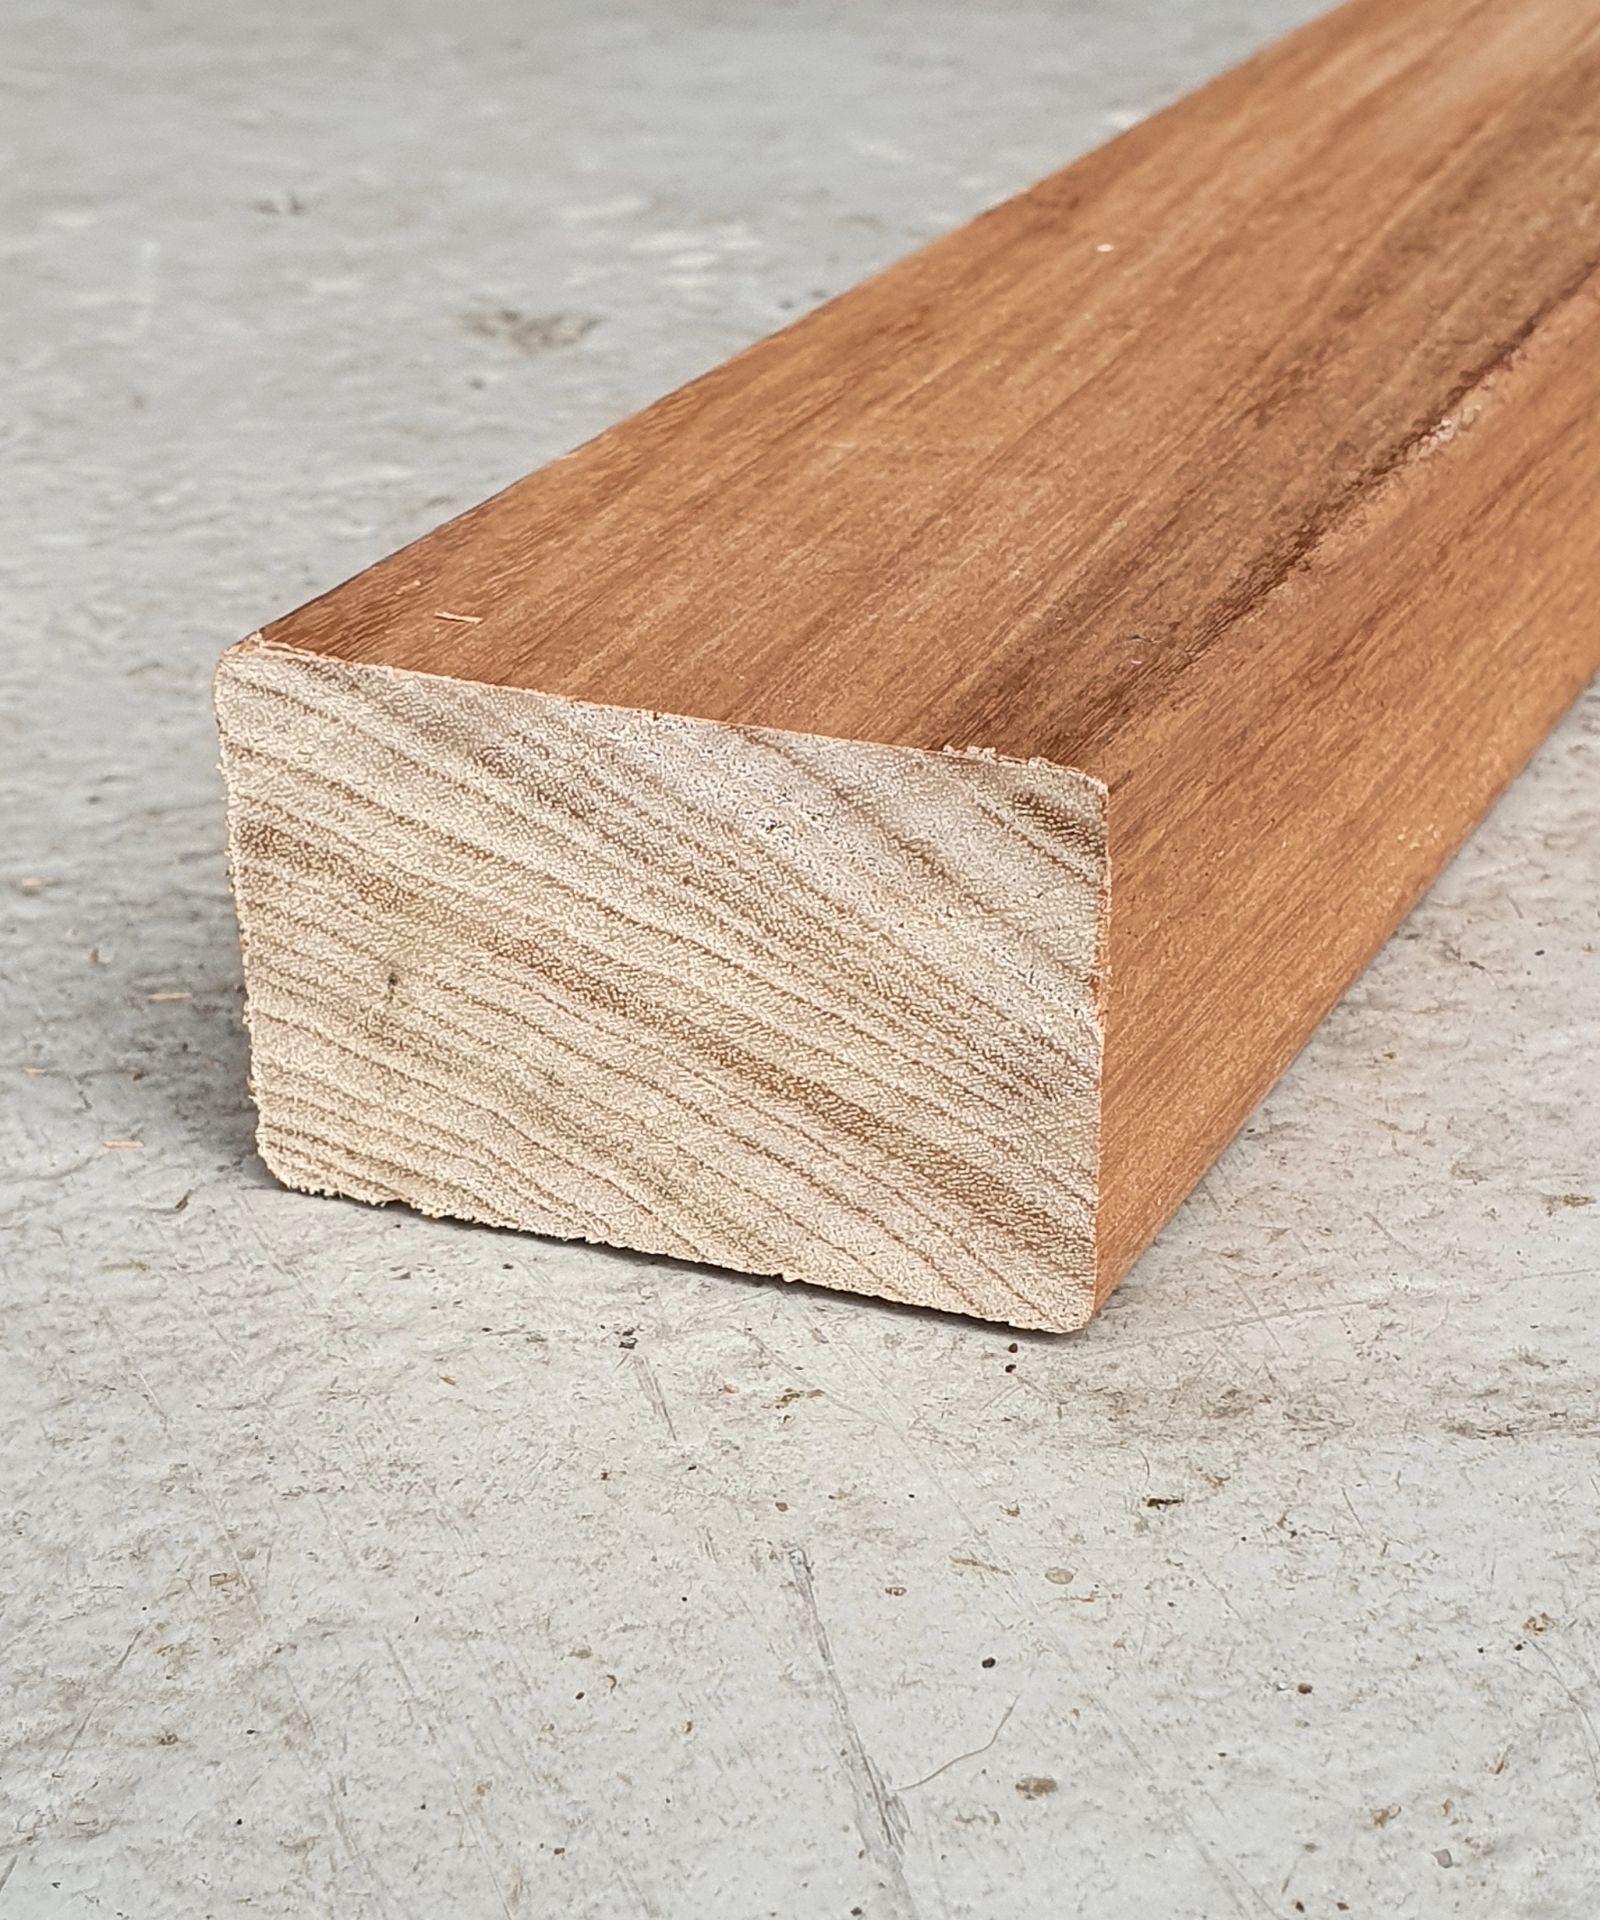 Acheter poutre de construction en bois dur - 90x90mm, FSC® 100%